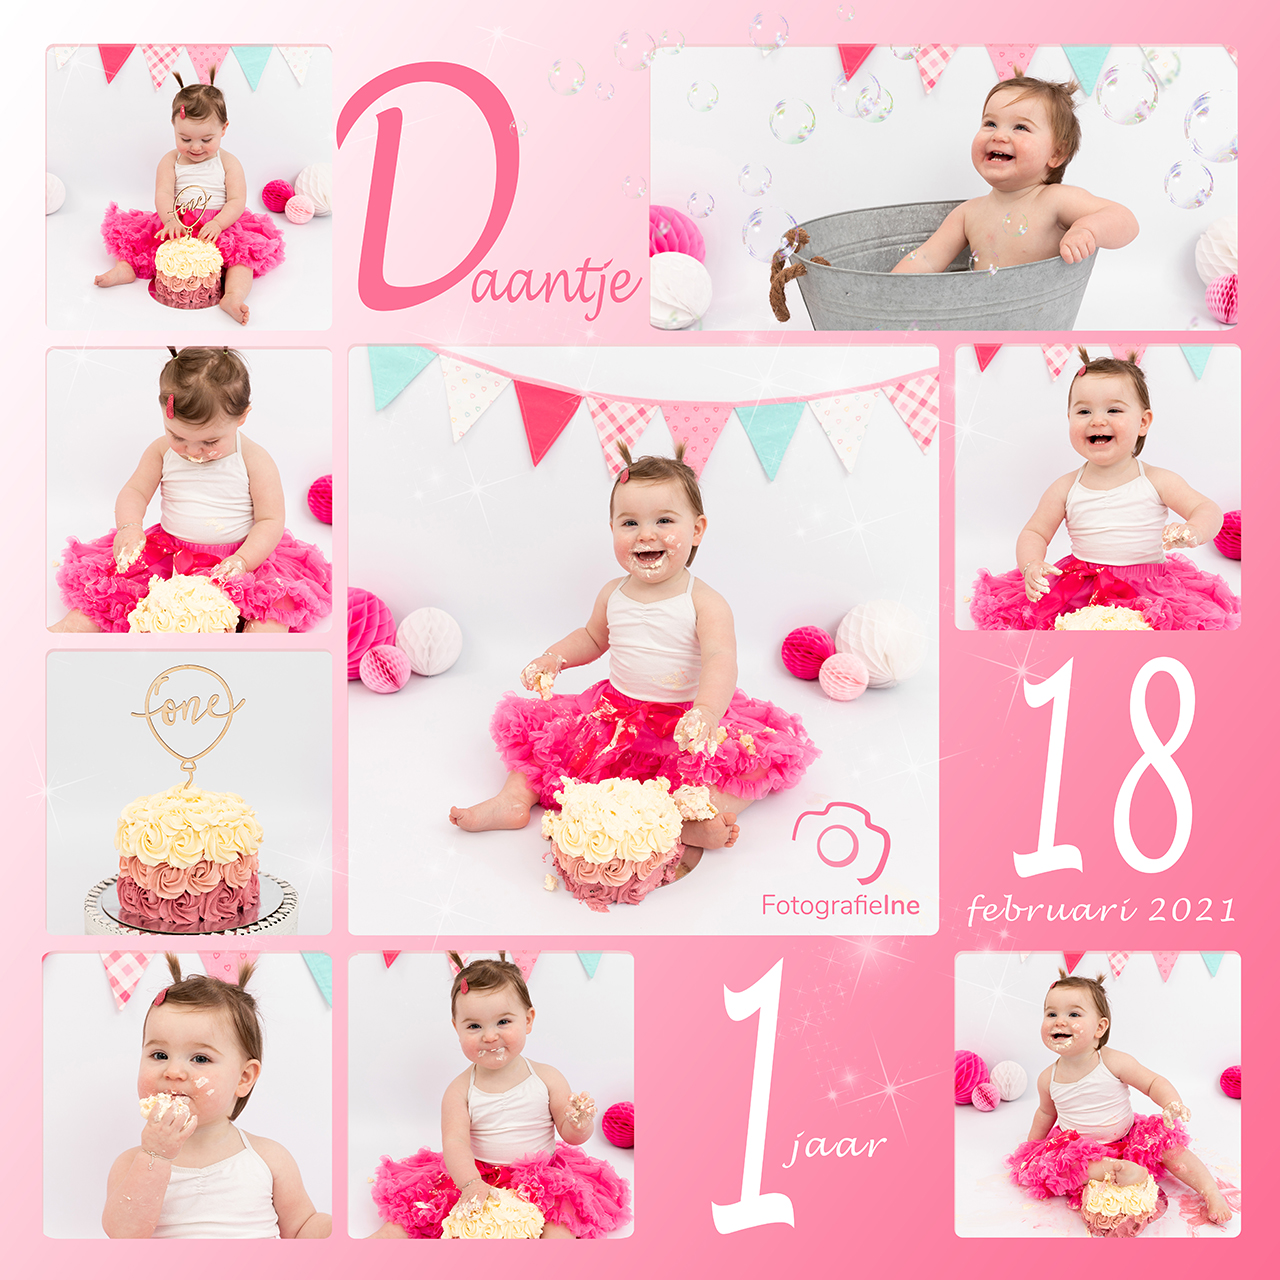 Fotografie Ine collage cakesmash Daantje met logo roze rustige achtergrond